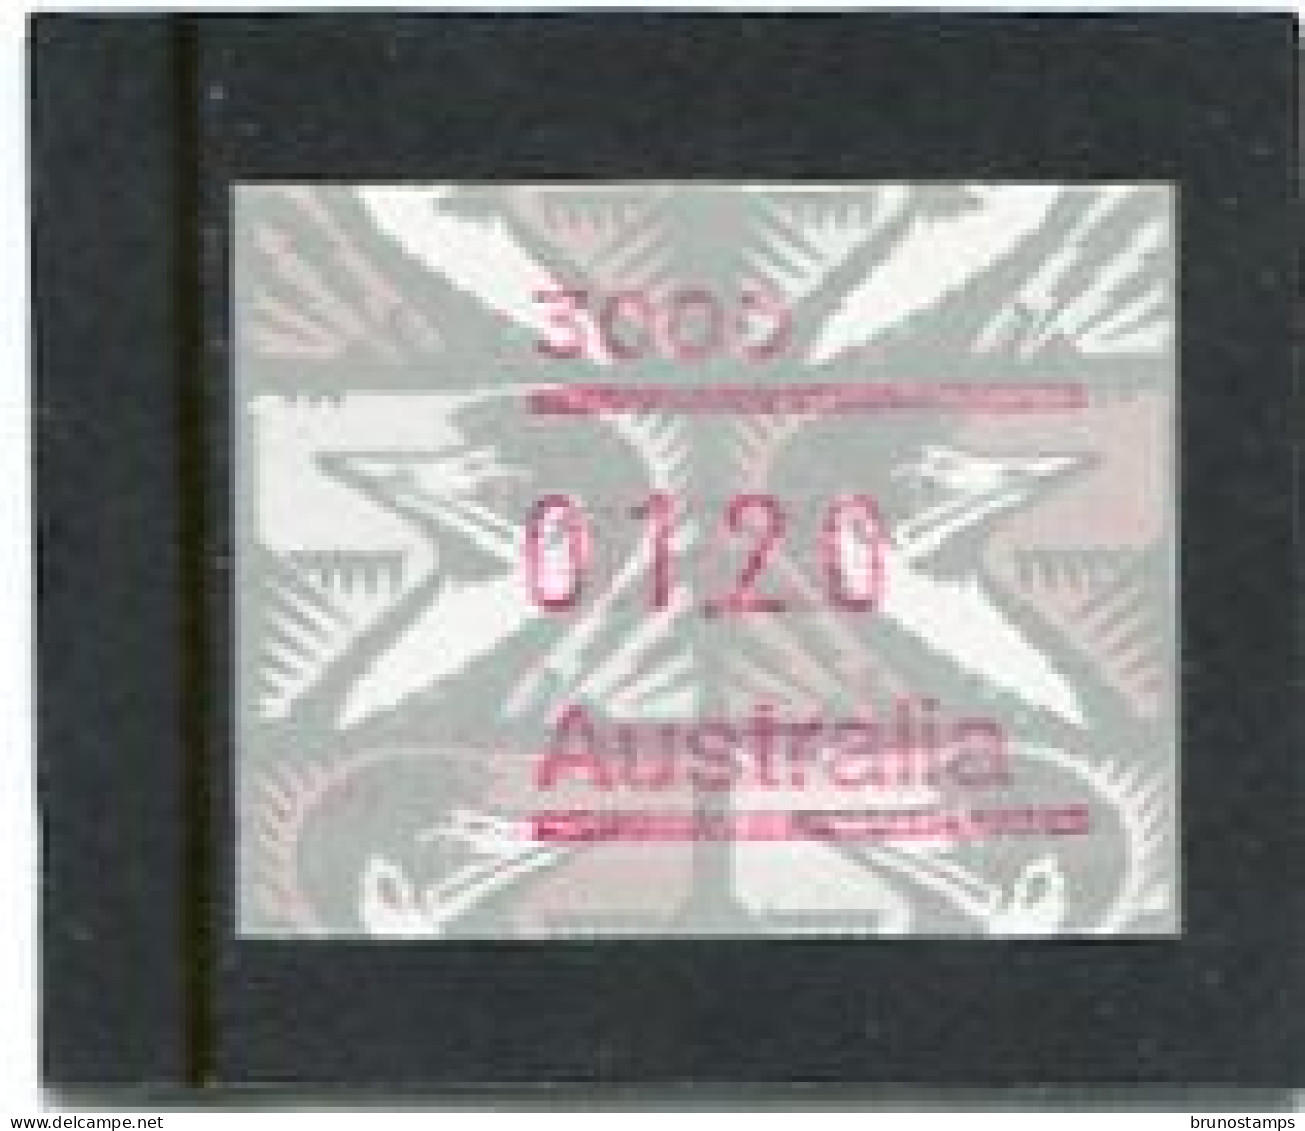 AUSTRALIA - 1992  1.20$  FRAMA  EMU  POSTCODE  3000  (MELBOURNE)  MINT NH - Viñetas De Franqueo [ATM]